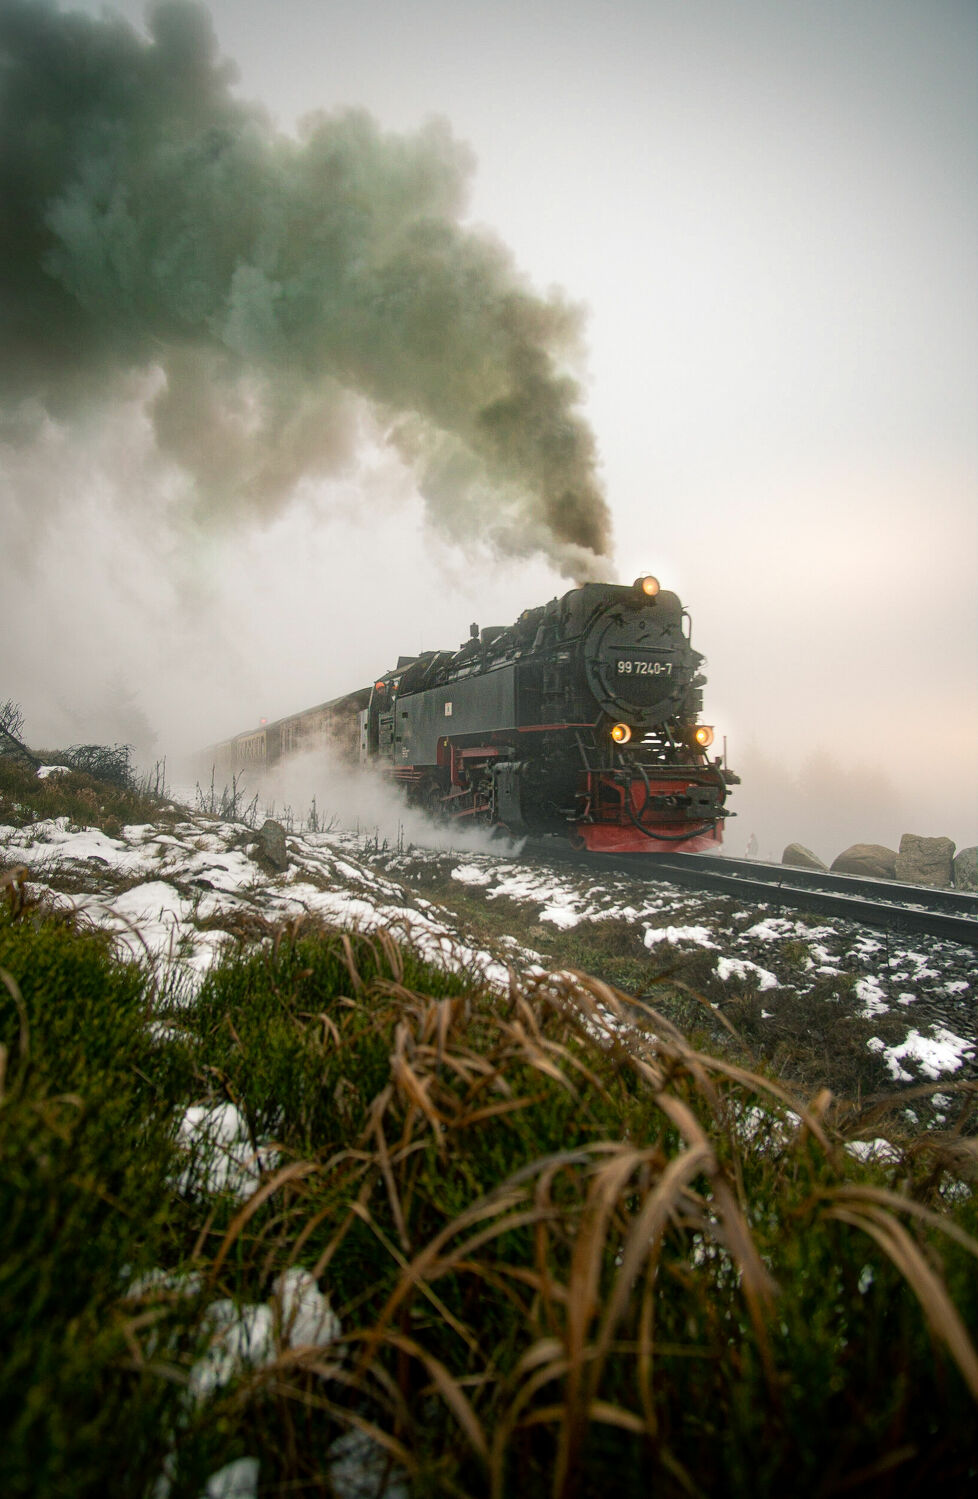 Bild mit Winter, Schnee, Nebel, Harz, Bahn, Dampf, Zug, Brocken, dampflok, Lokomotive